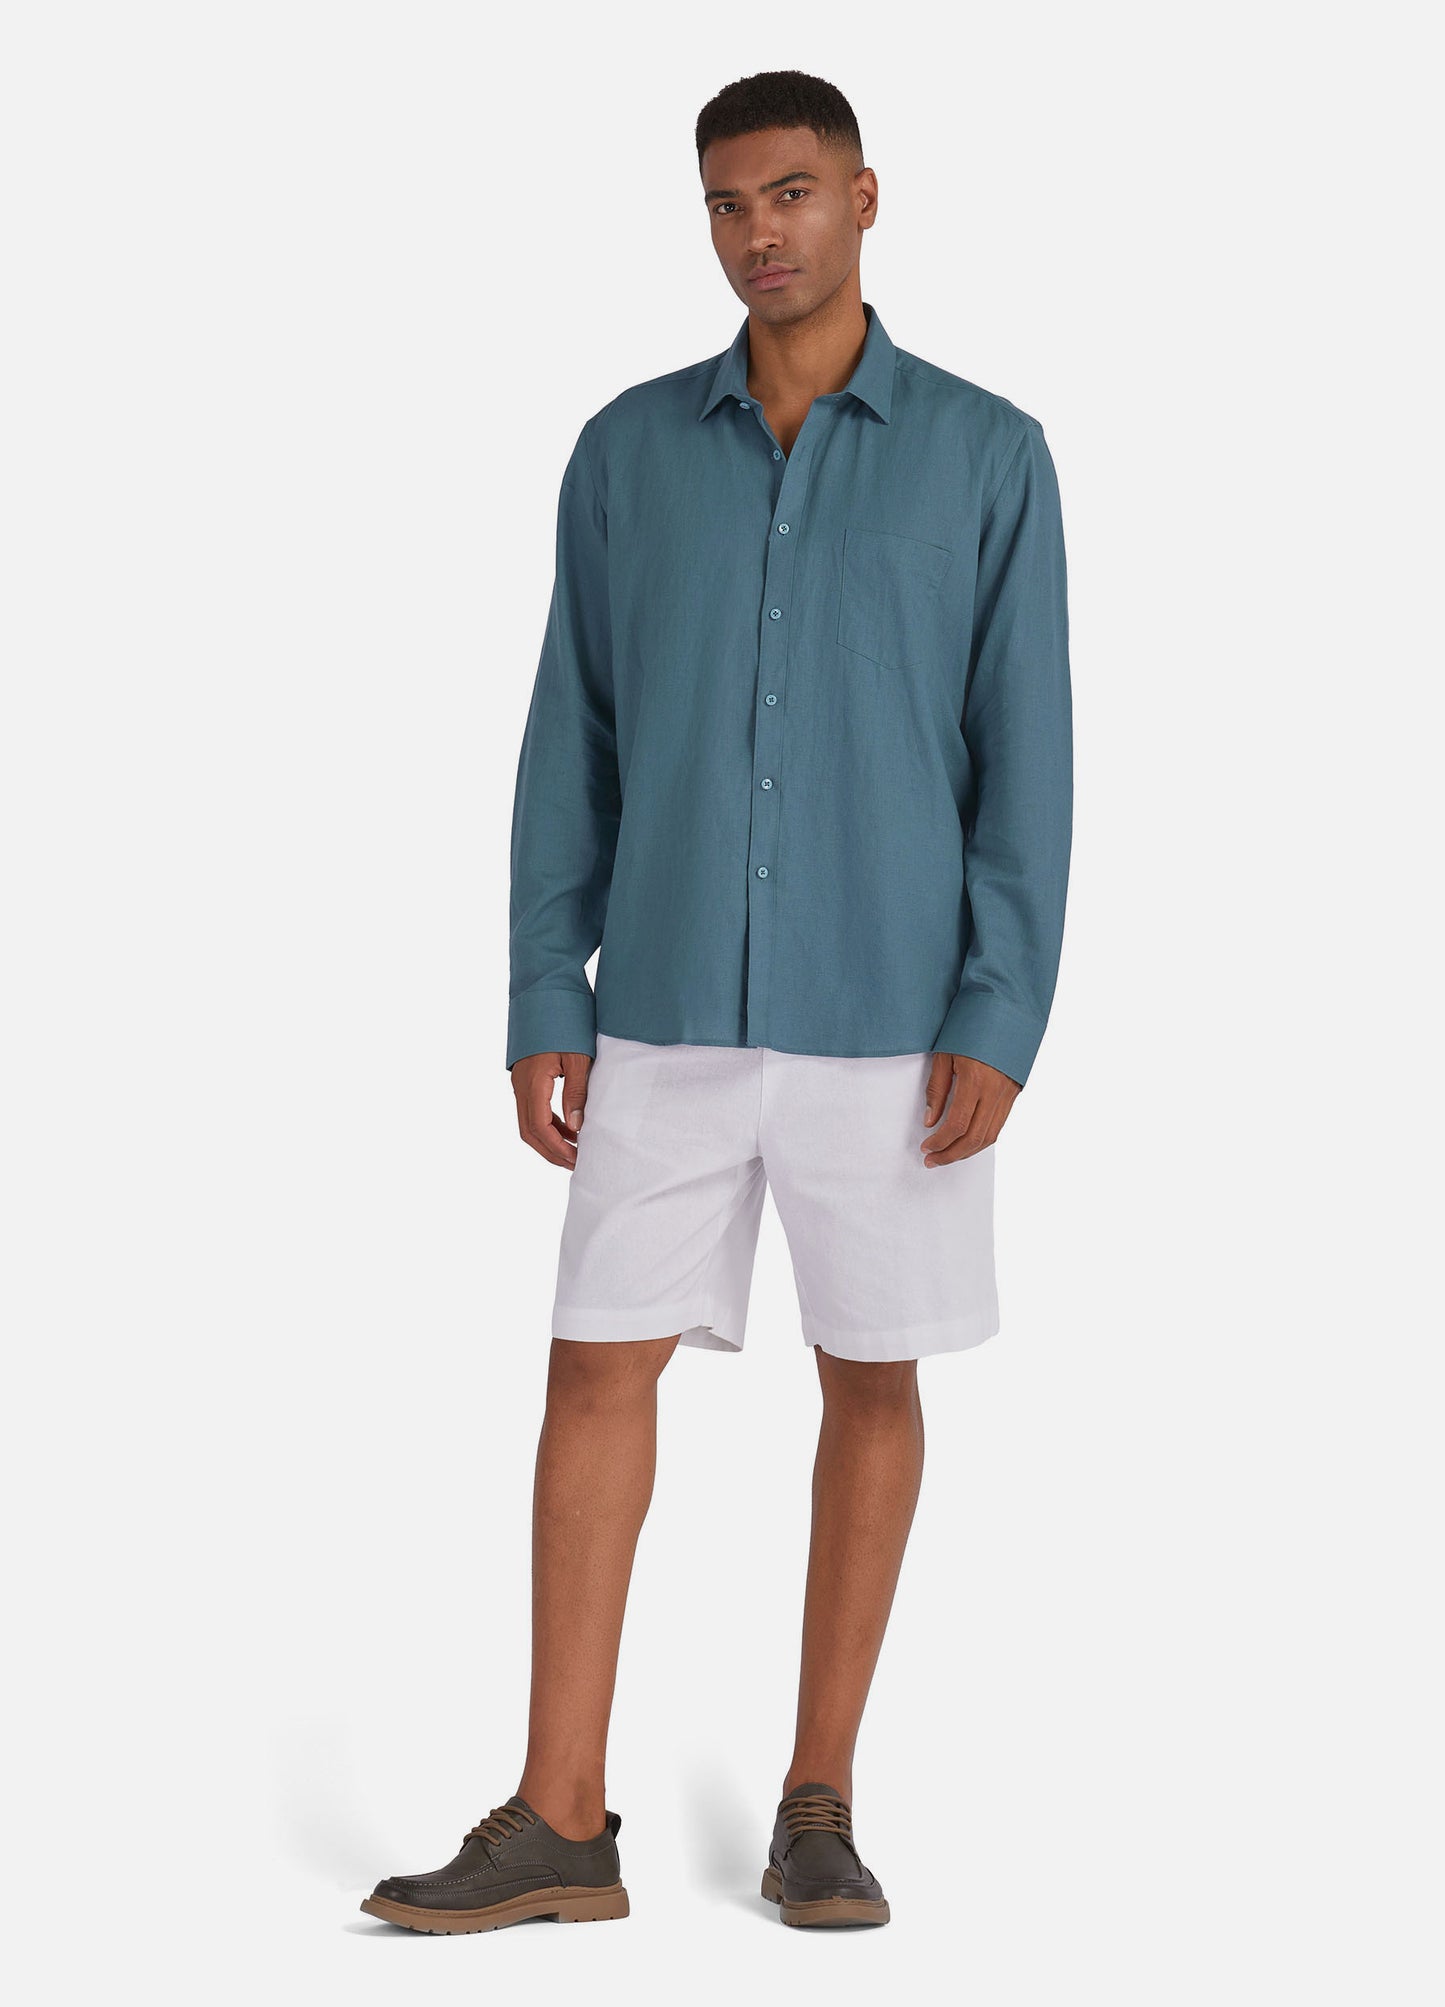 1PA1 Men's 100% Linen Dress Shirts Button Down Plain Casual Shirts